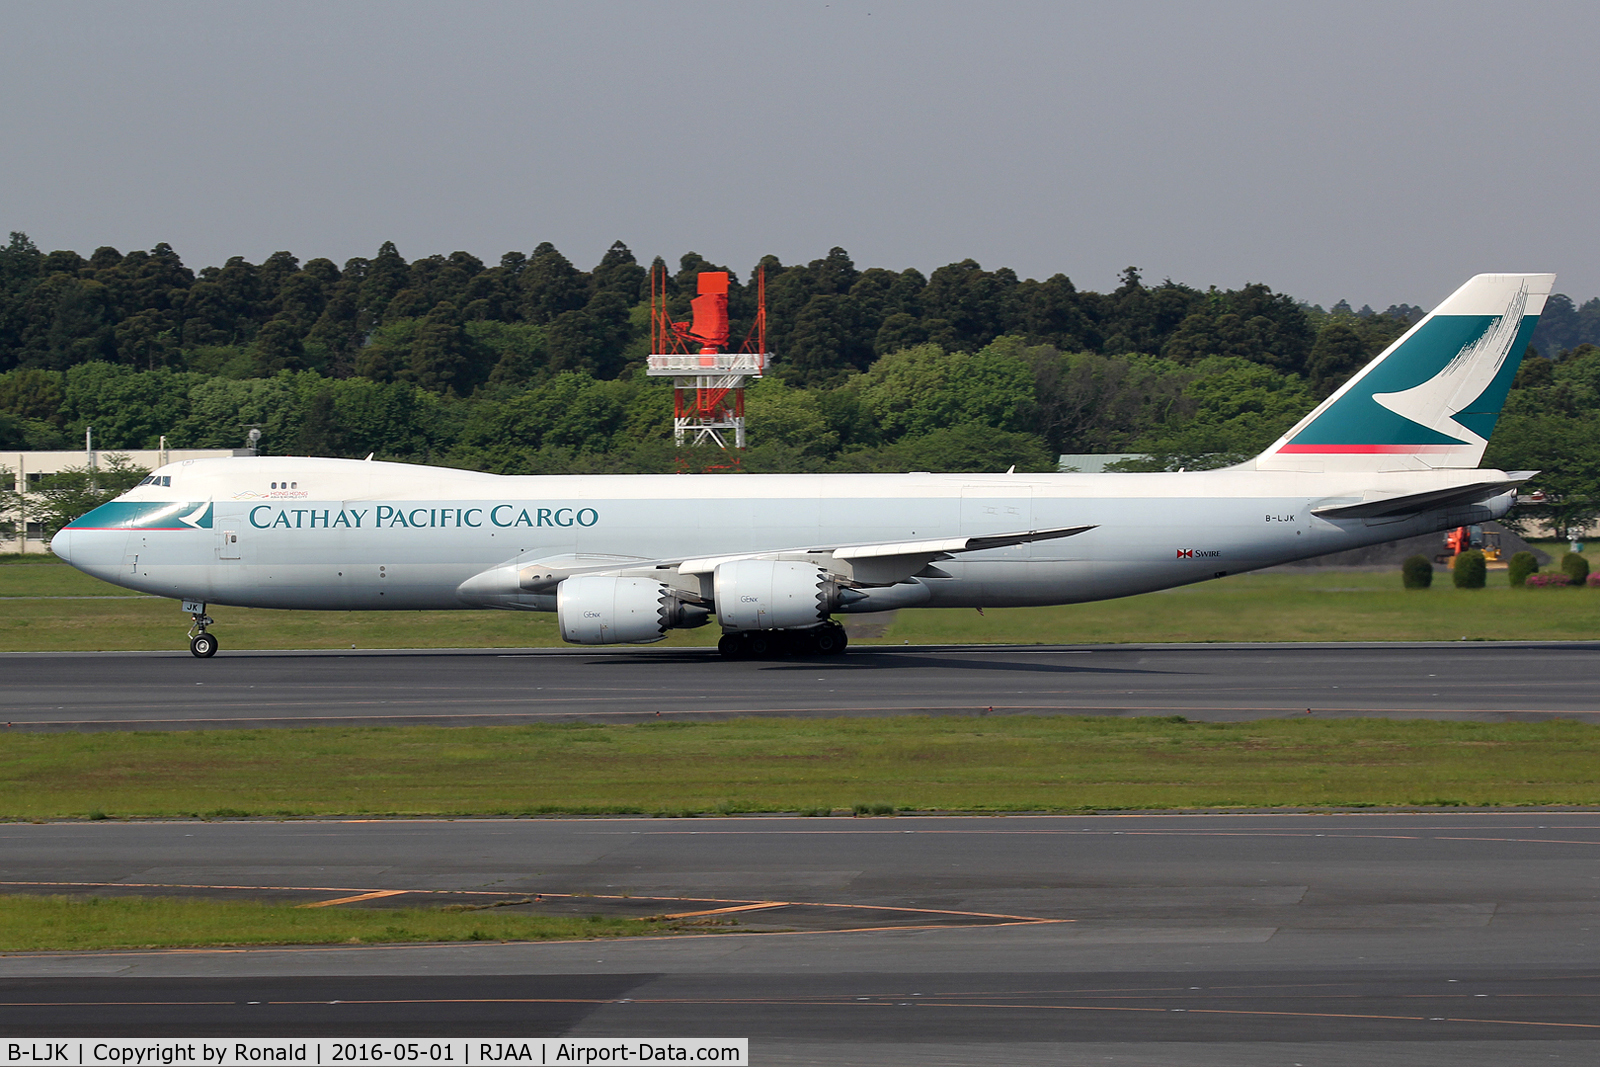 B-LJK, 2013 Boeing 747-867F/SCD C/N 43394, at nrt